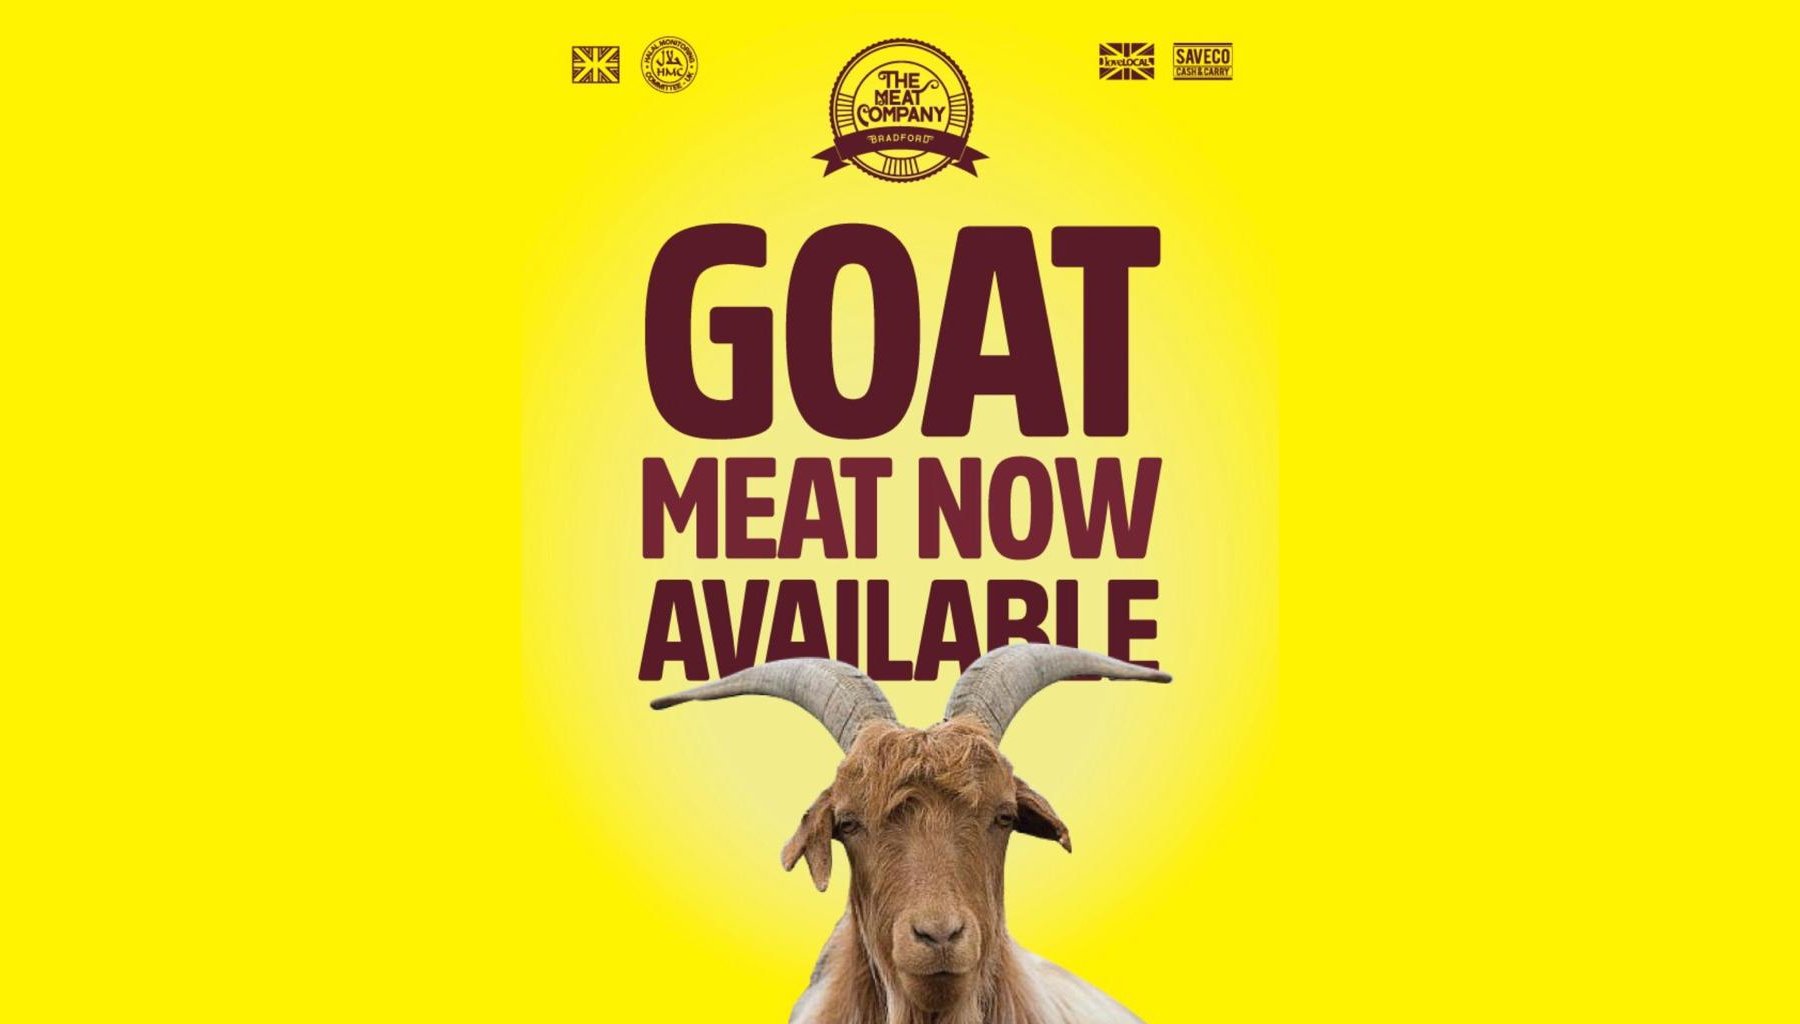 Goat Meat Just Arrived! SaveCo Online Ltd